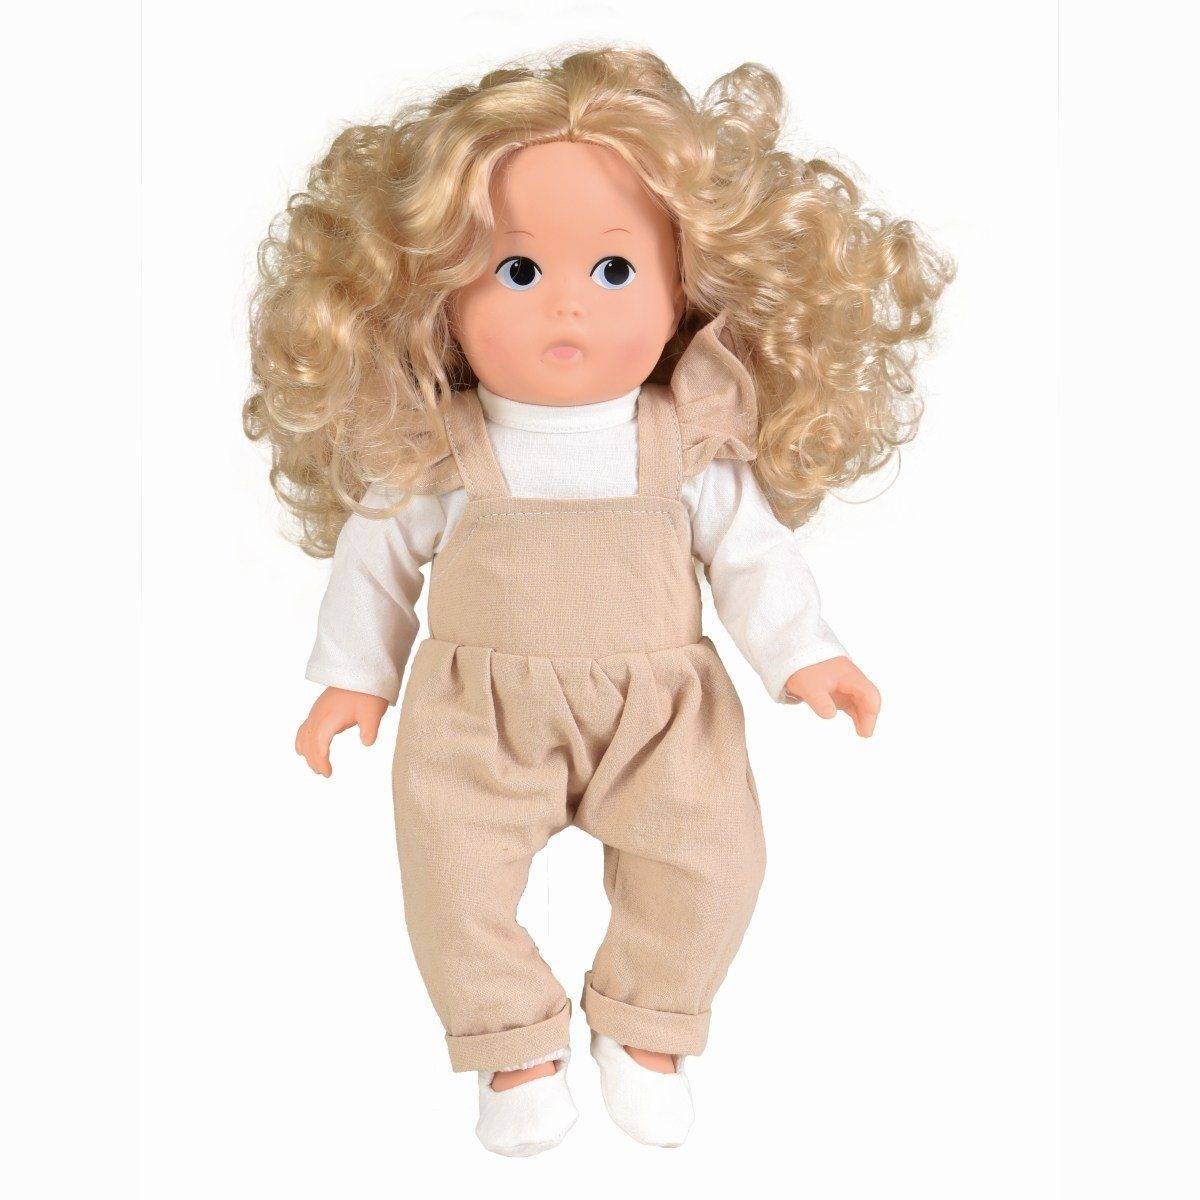 Egmont Toys Anziehpuppe Puppe Lien 32 cm Blonde Locken Rollenspiel